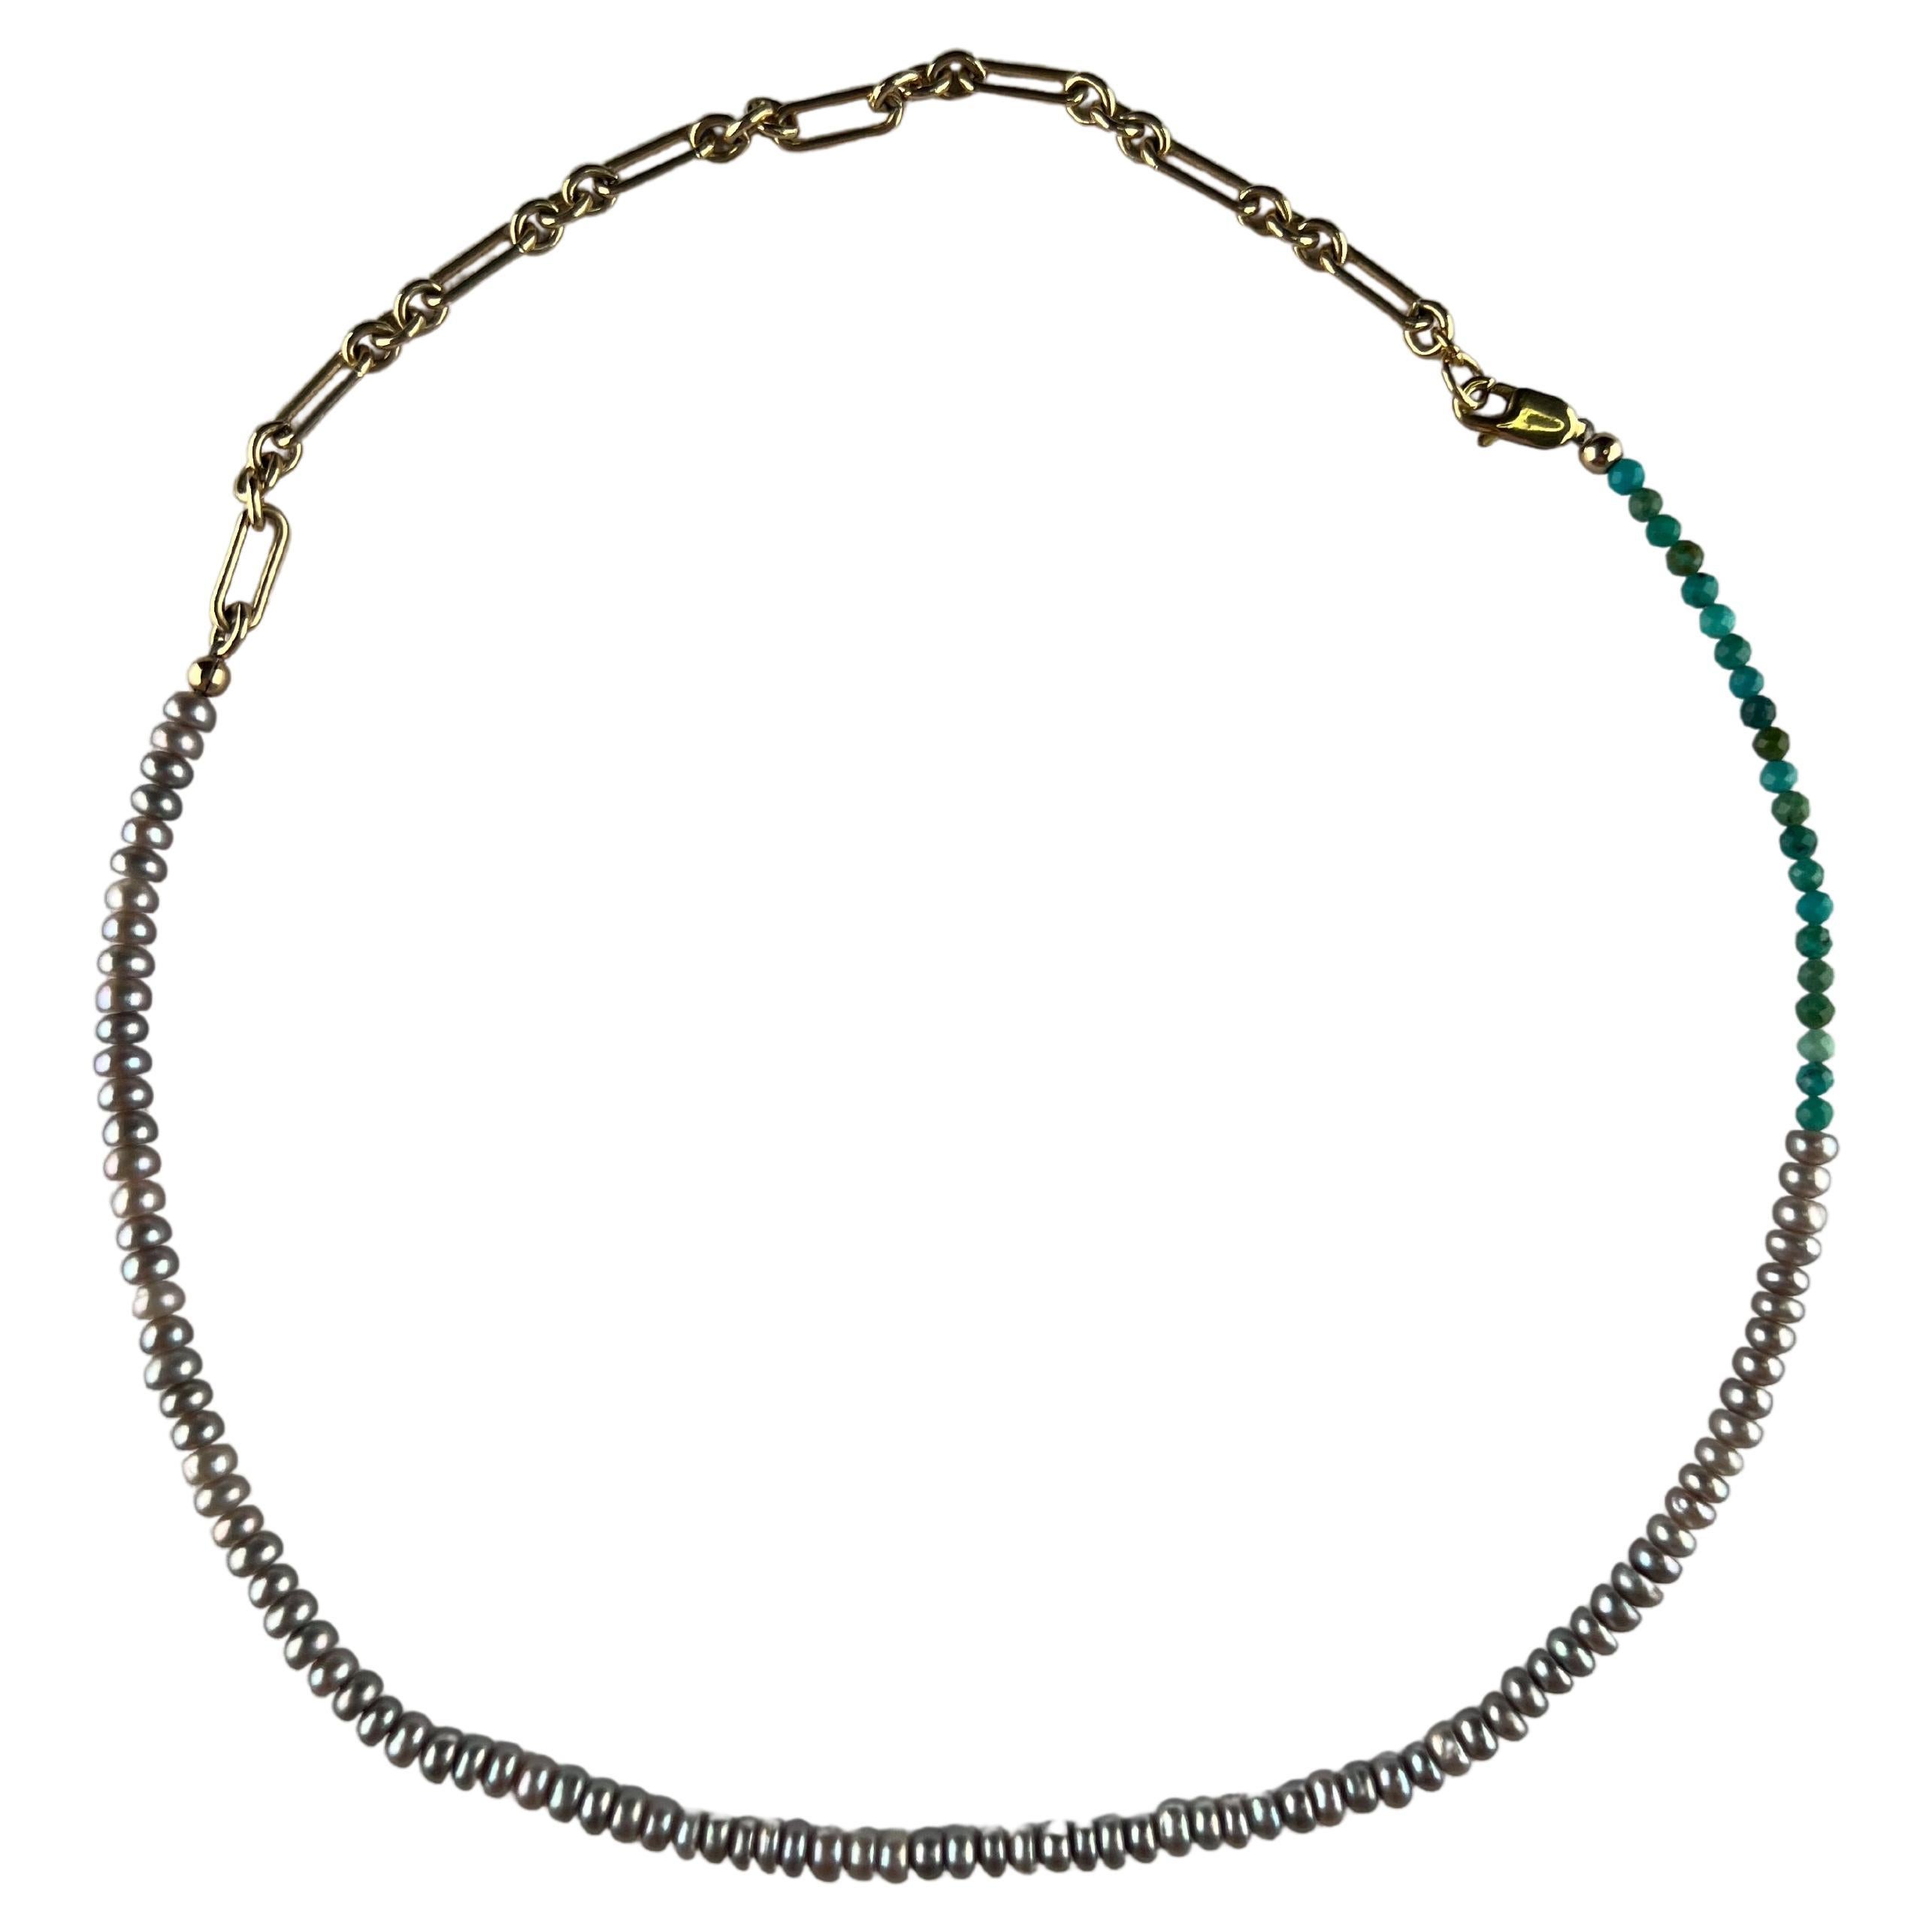 Collier de perles Collier ras du cou en perles argentées et turquoises par J Dauphin

